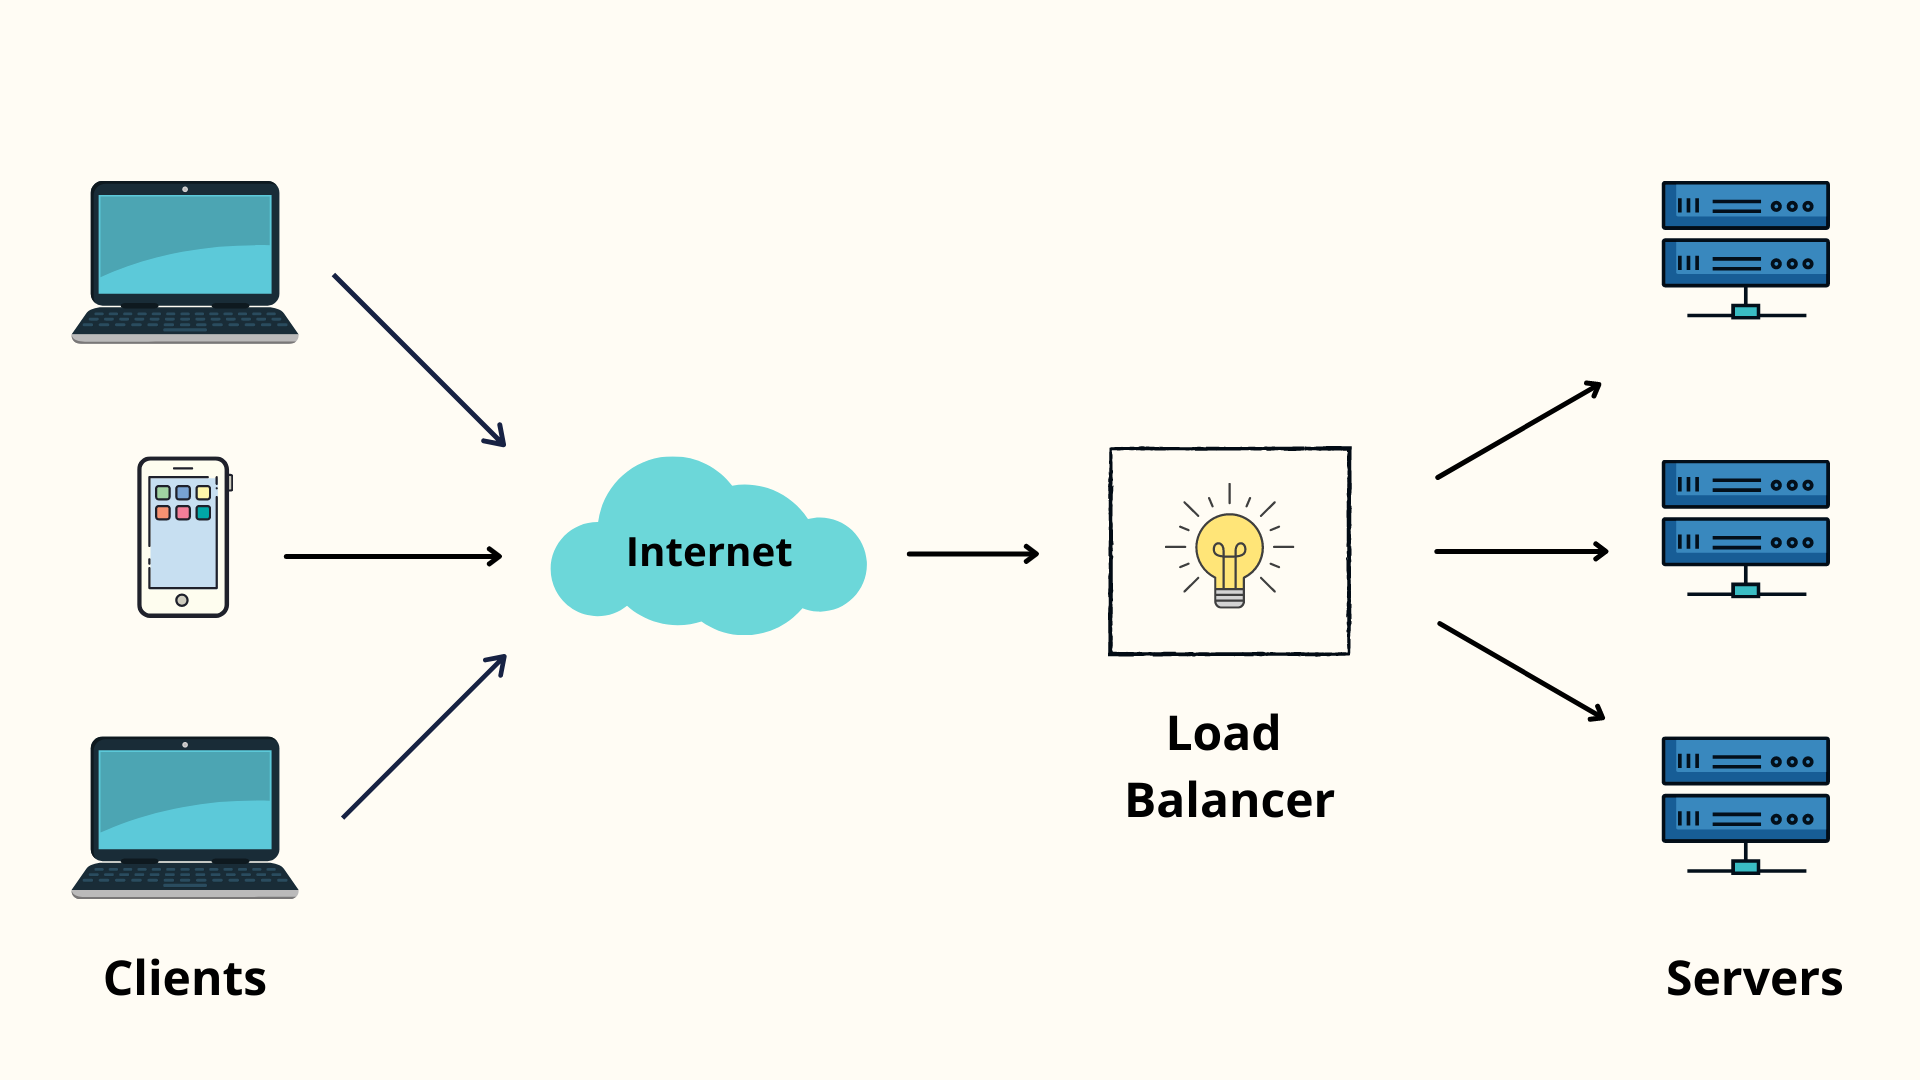 How load balancer works